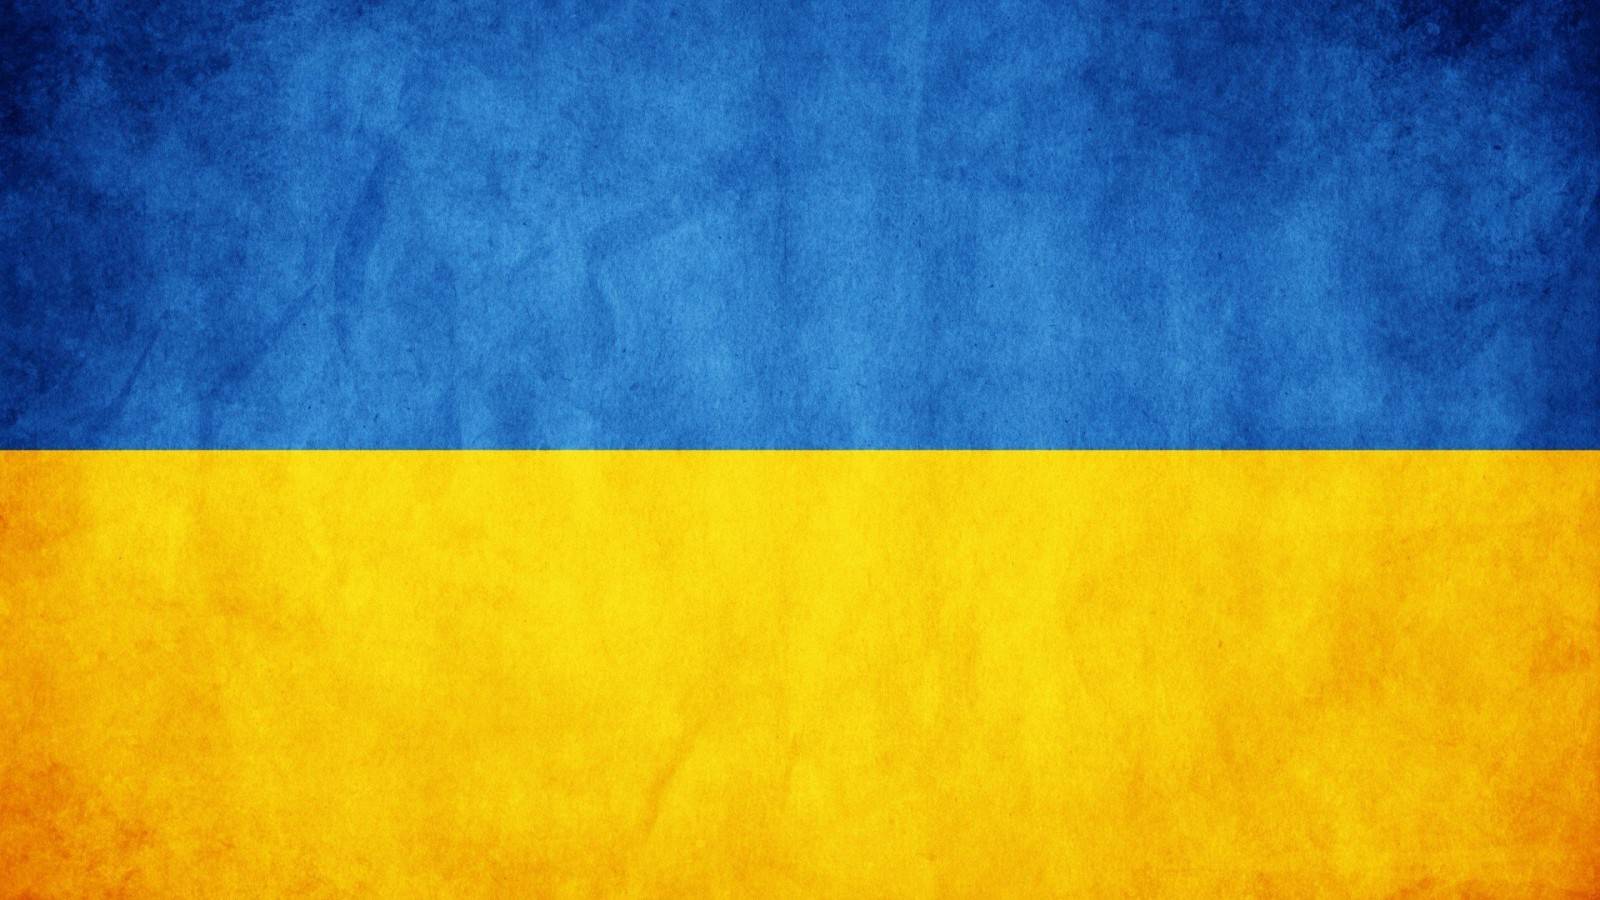 Grande cordão humano pela paz na Ucrânia